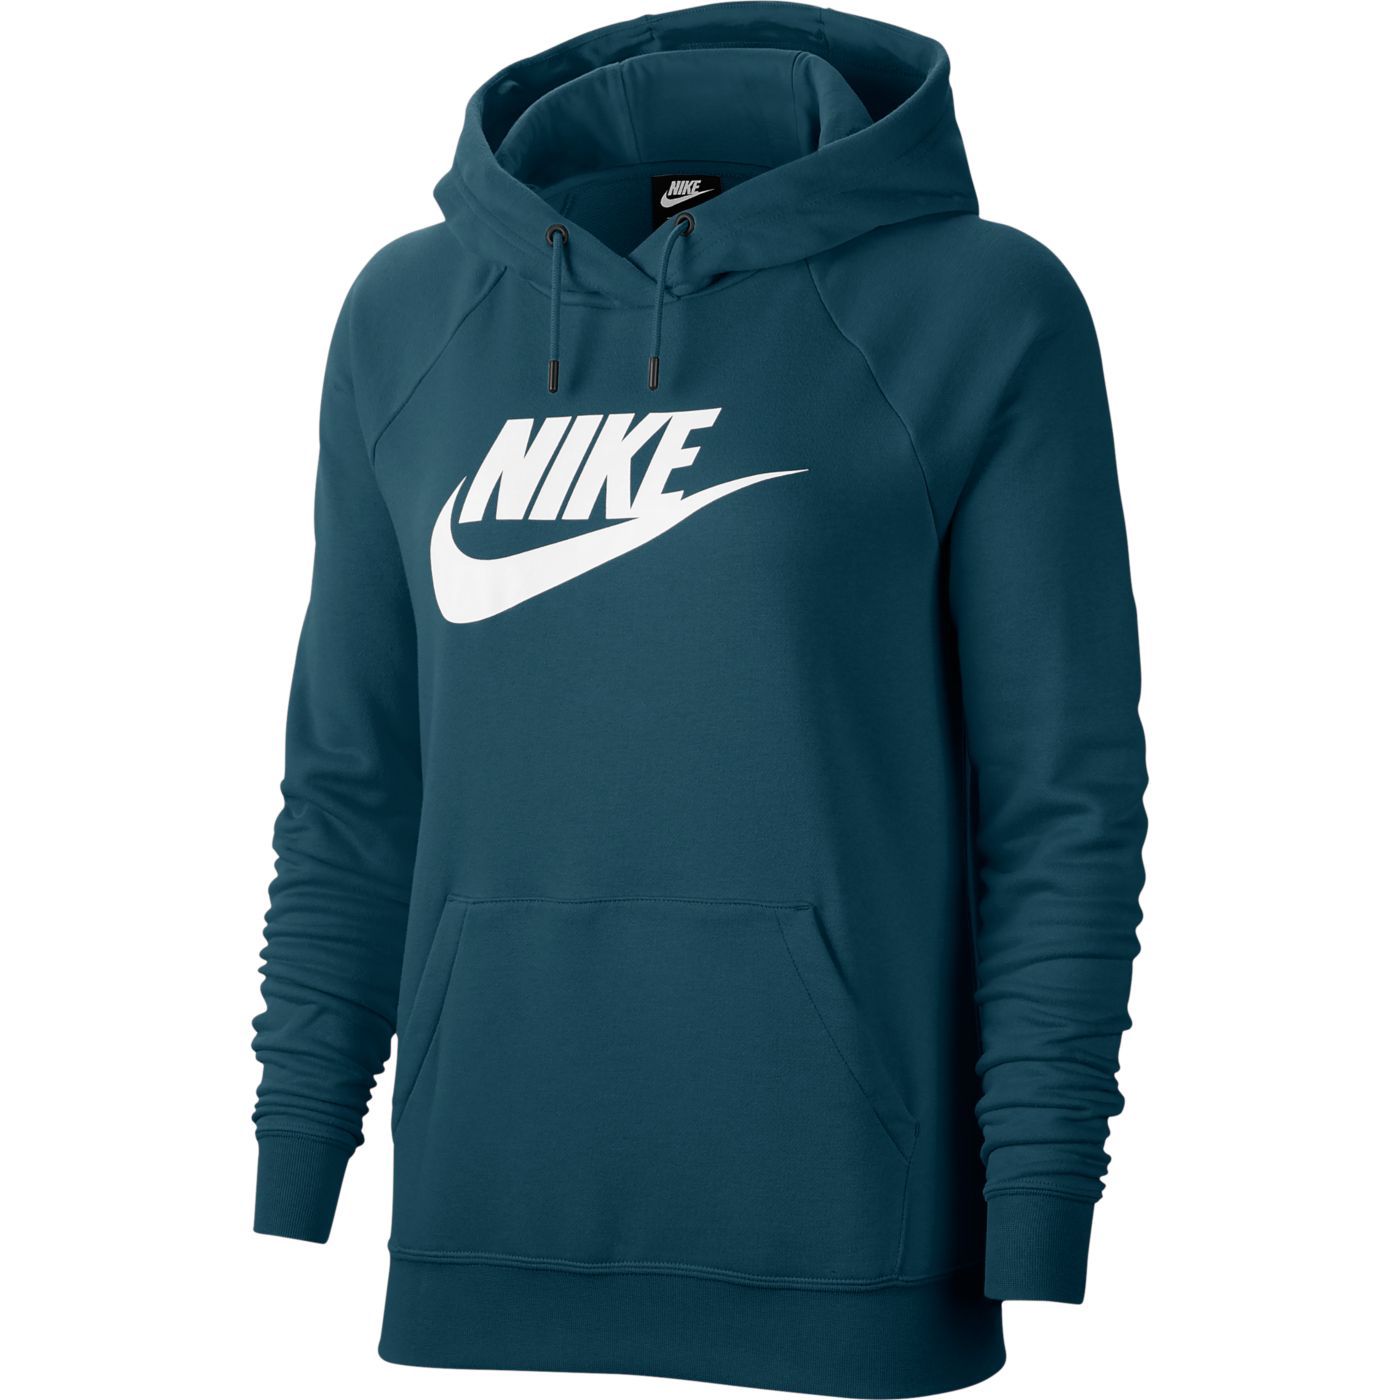 Nike Sportswear Women's Essential Fleece Pullover Hoodie | DICK'S ...